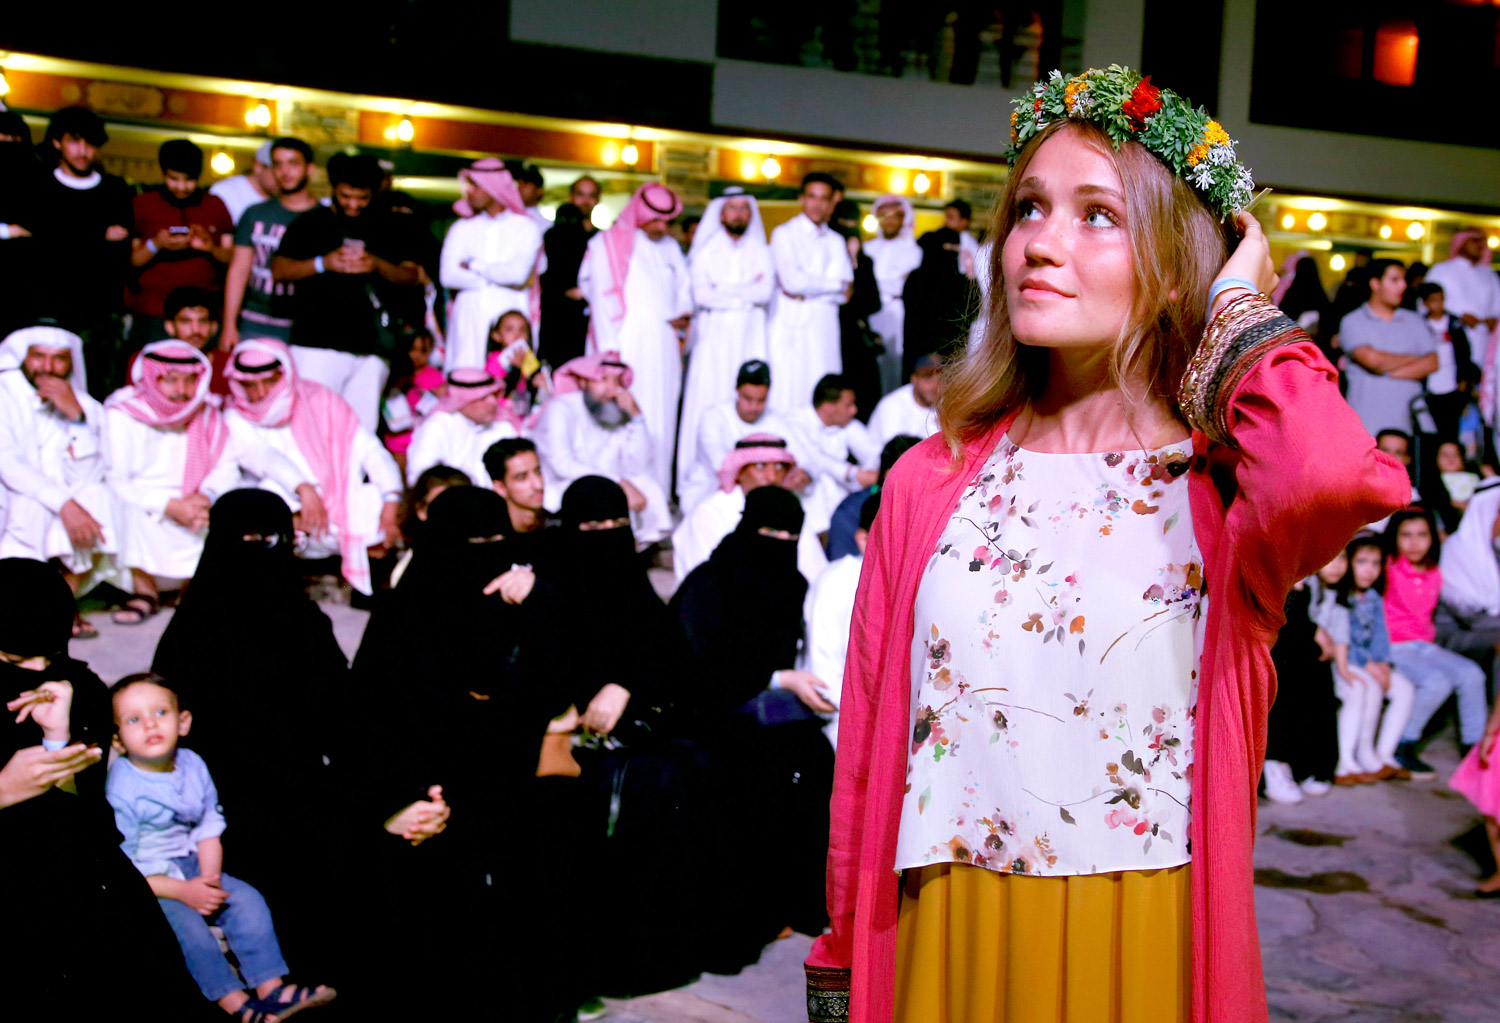 السعوديون يرحبون بانفتاح بلادهم على ثقافات أخرى